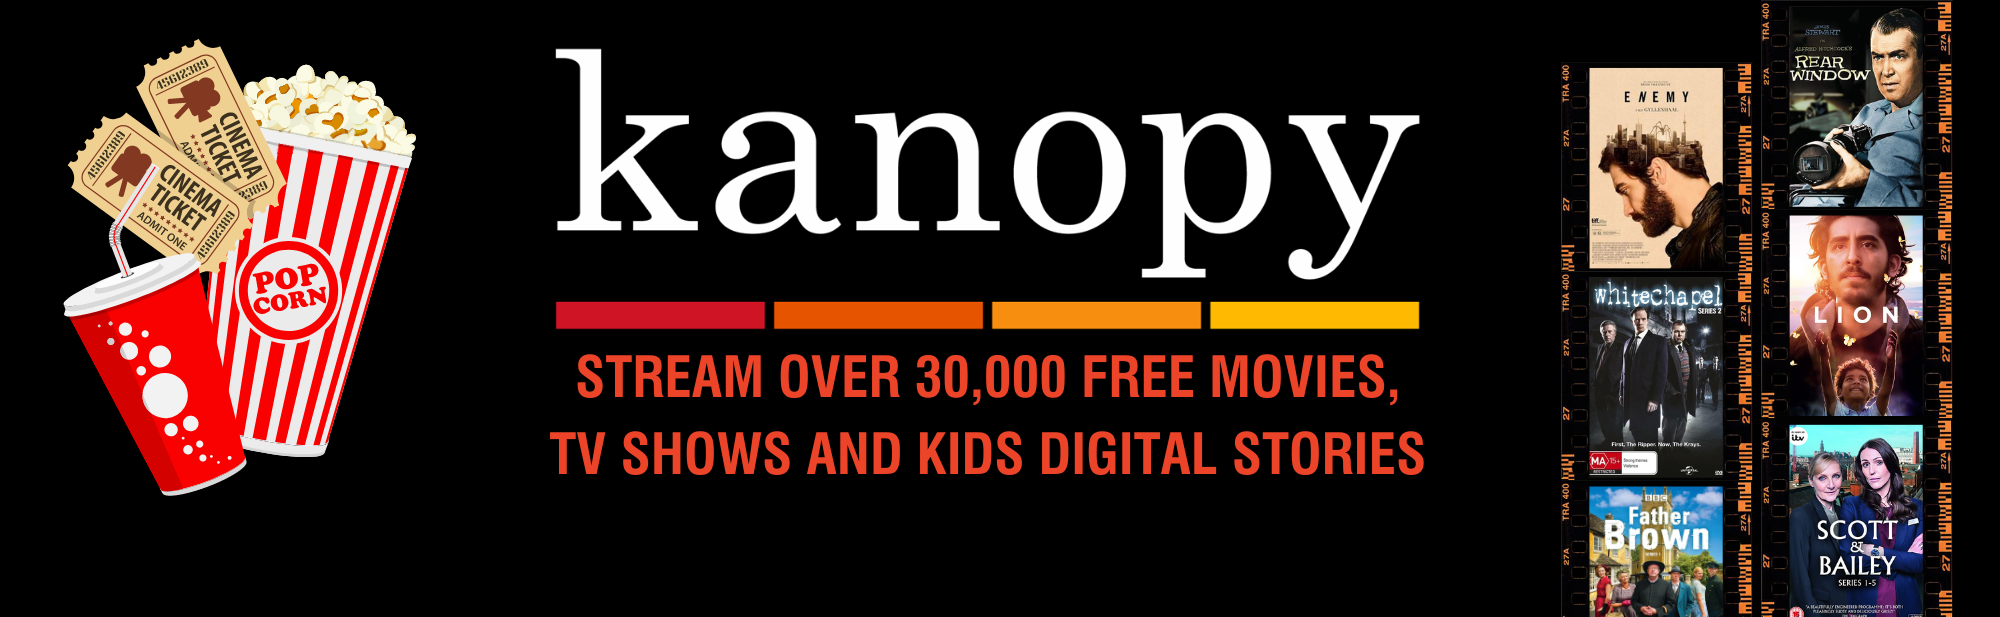 Kanopy Website banner.png